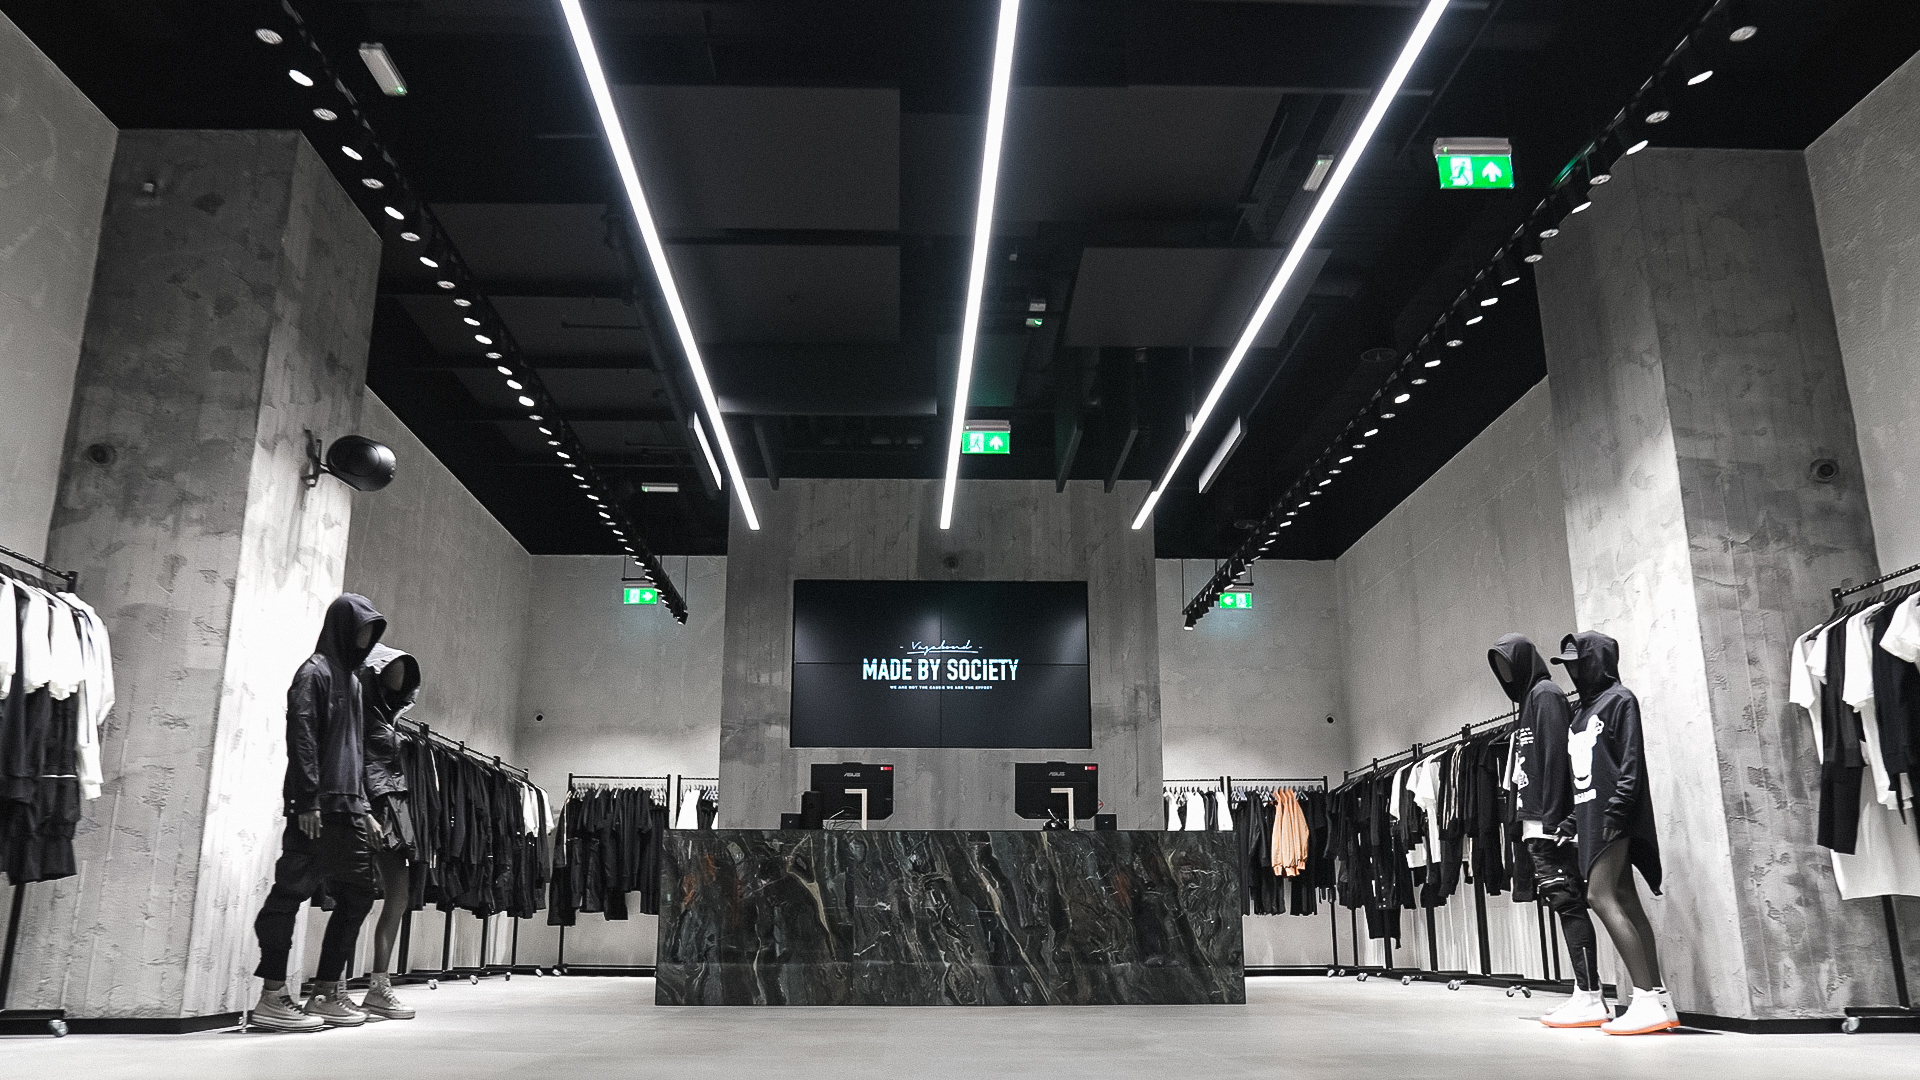 Retailerul român Vagabond Studio deschide primul magazin sub conceptul “Made by Society” la Londra, asistat de CBRE România și CBRE UK